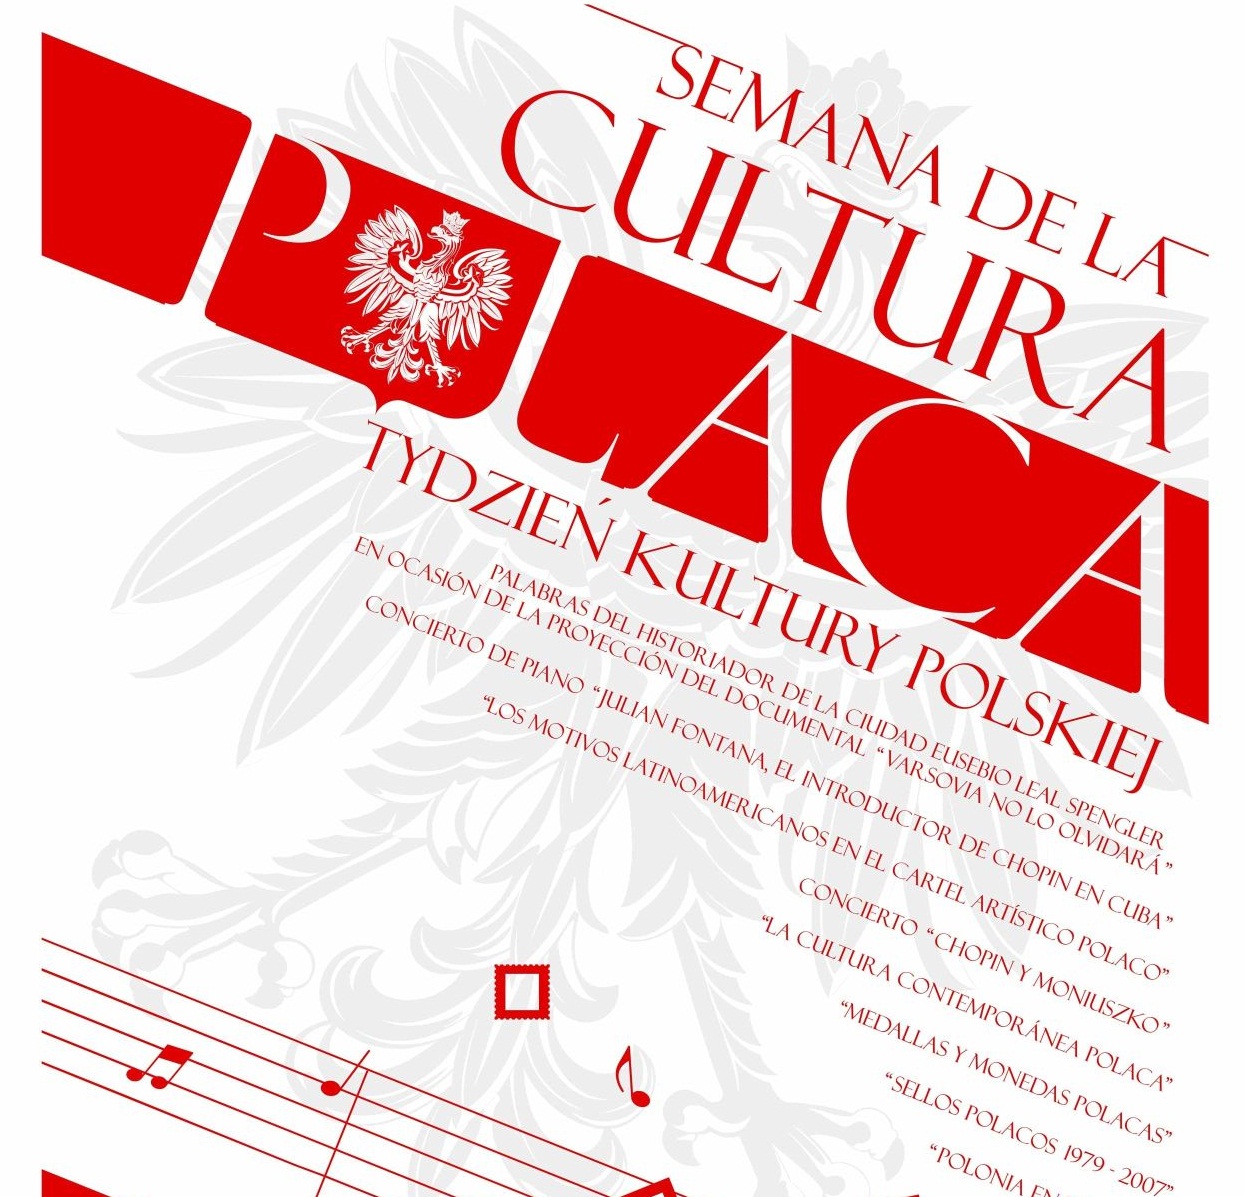 Semana de la Cultura Polaca en Cuba